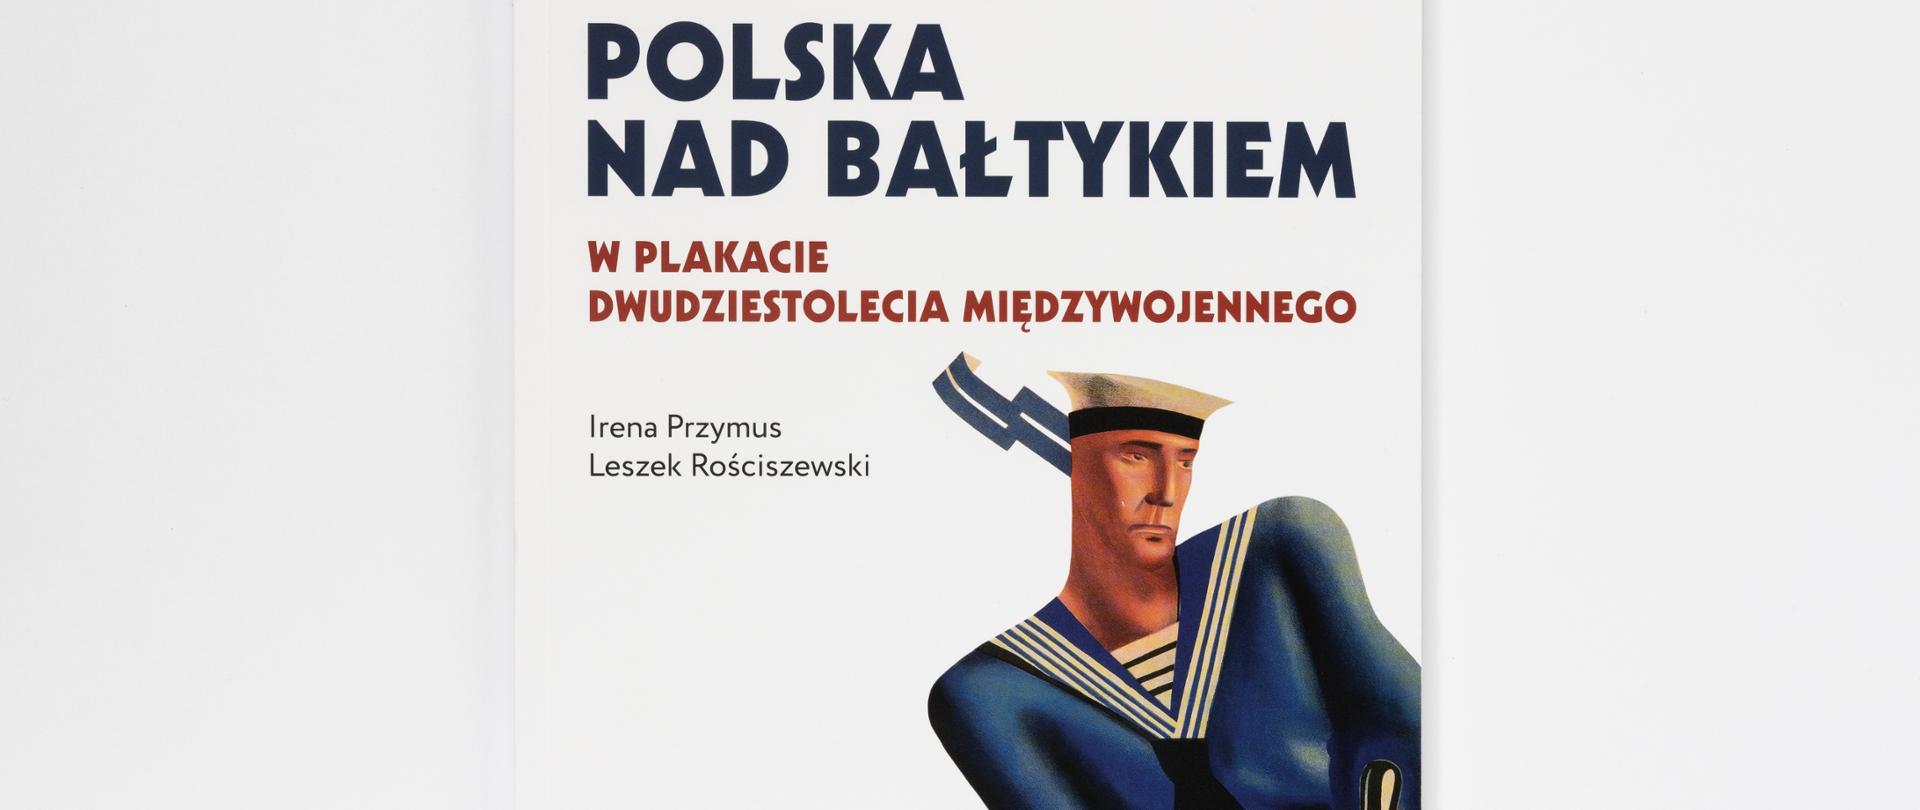 Polska nad Bałtykiem w plakacie dwudziestolecia międzywojennego